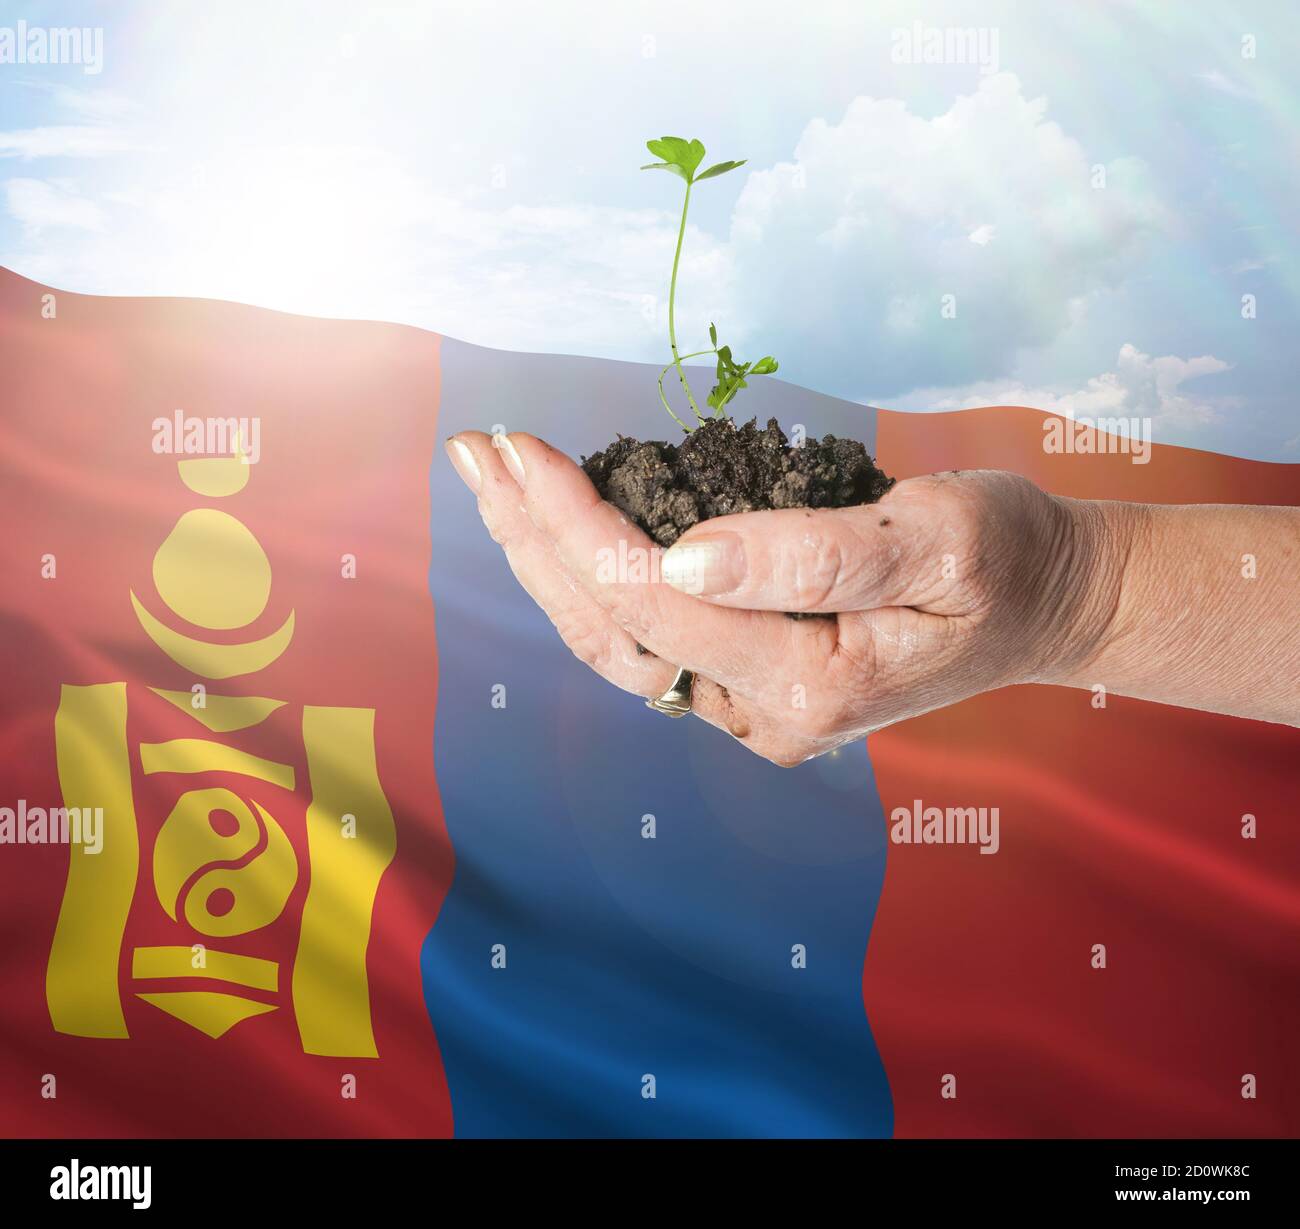 Mongolia crecimiento y nuevo comienzo. Concepto de energía renovable verde y ecología. Mano sosteniendo planta joven. Foto de stock